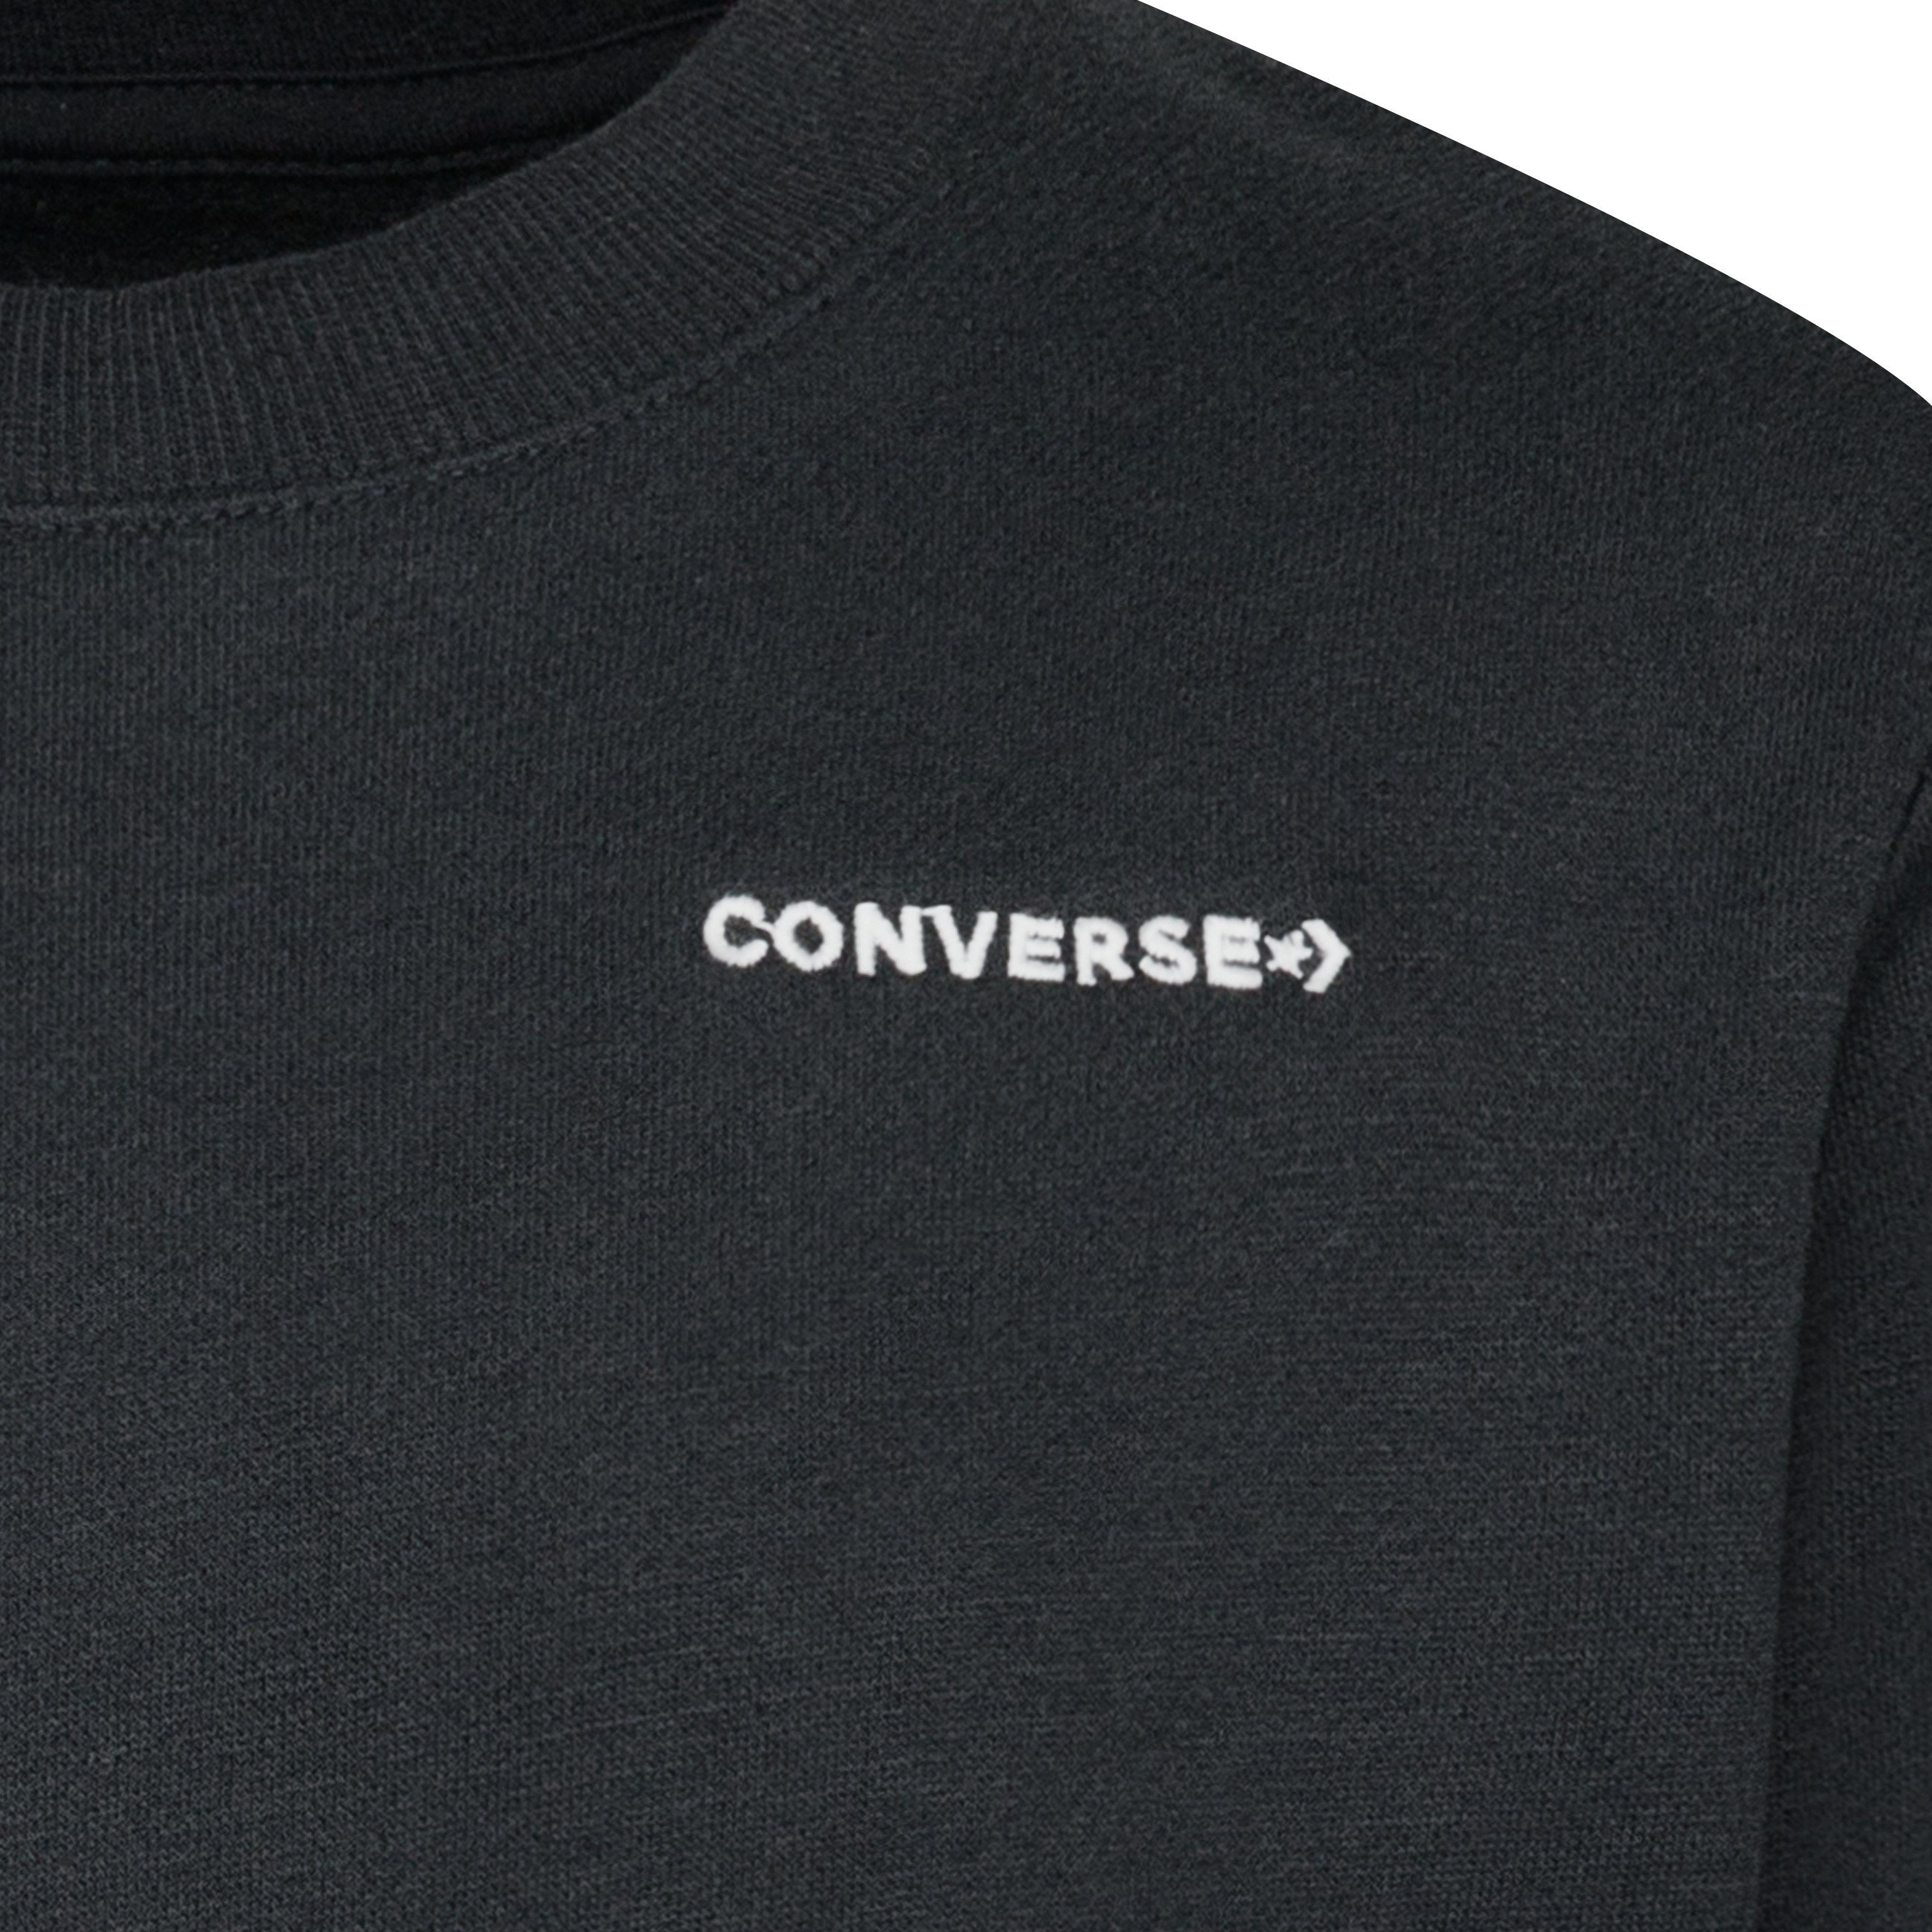 WORDMARK Converse - Sweatshirt Kinder CREW BLACK für